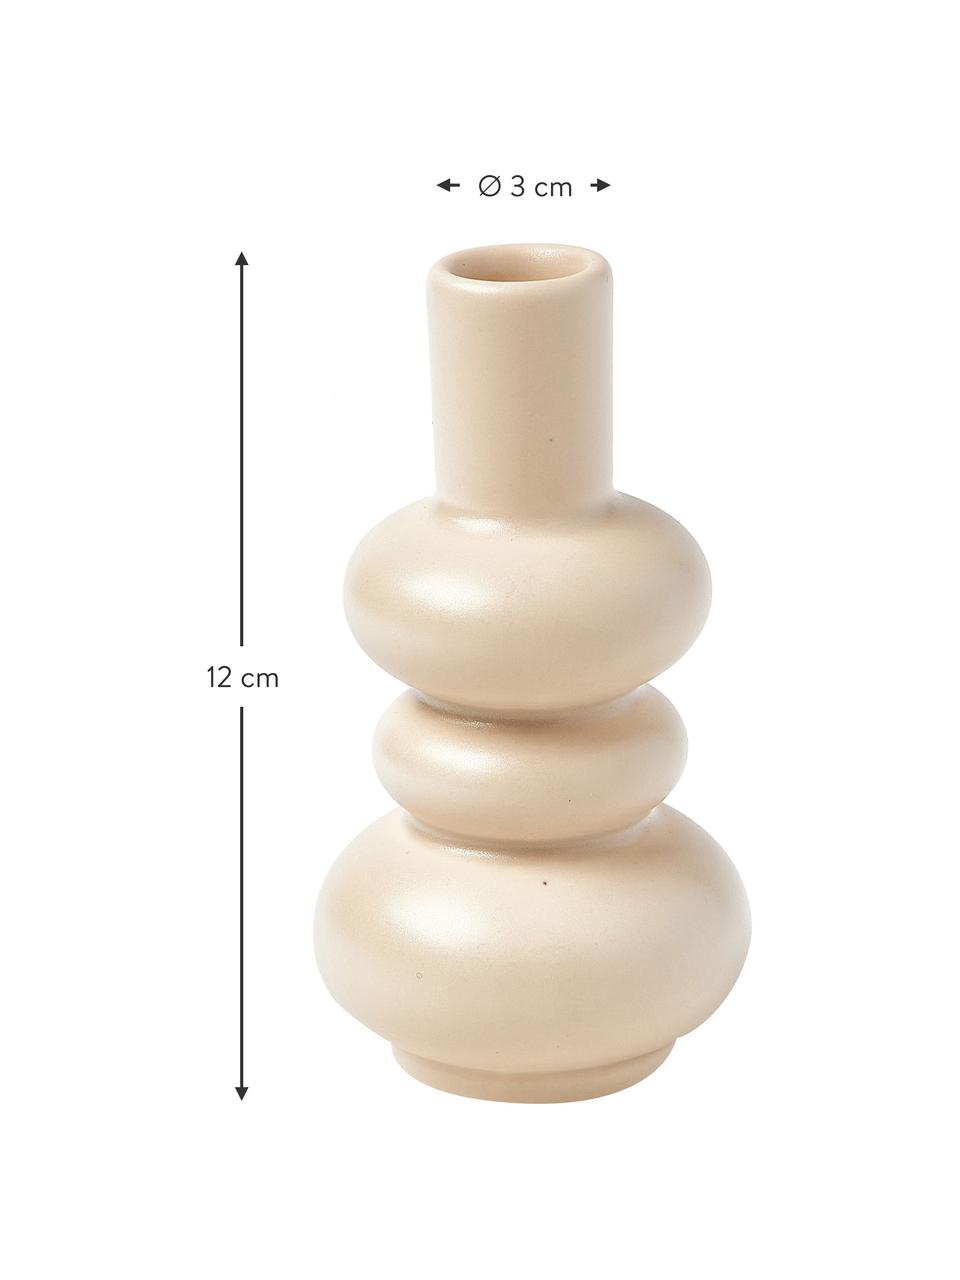 Deko-Vase Bastone in organischer Form, Steingut, Beige, Ø 3 x H 12 cm